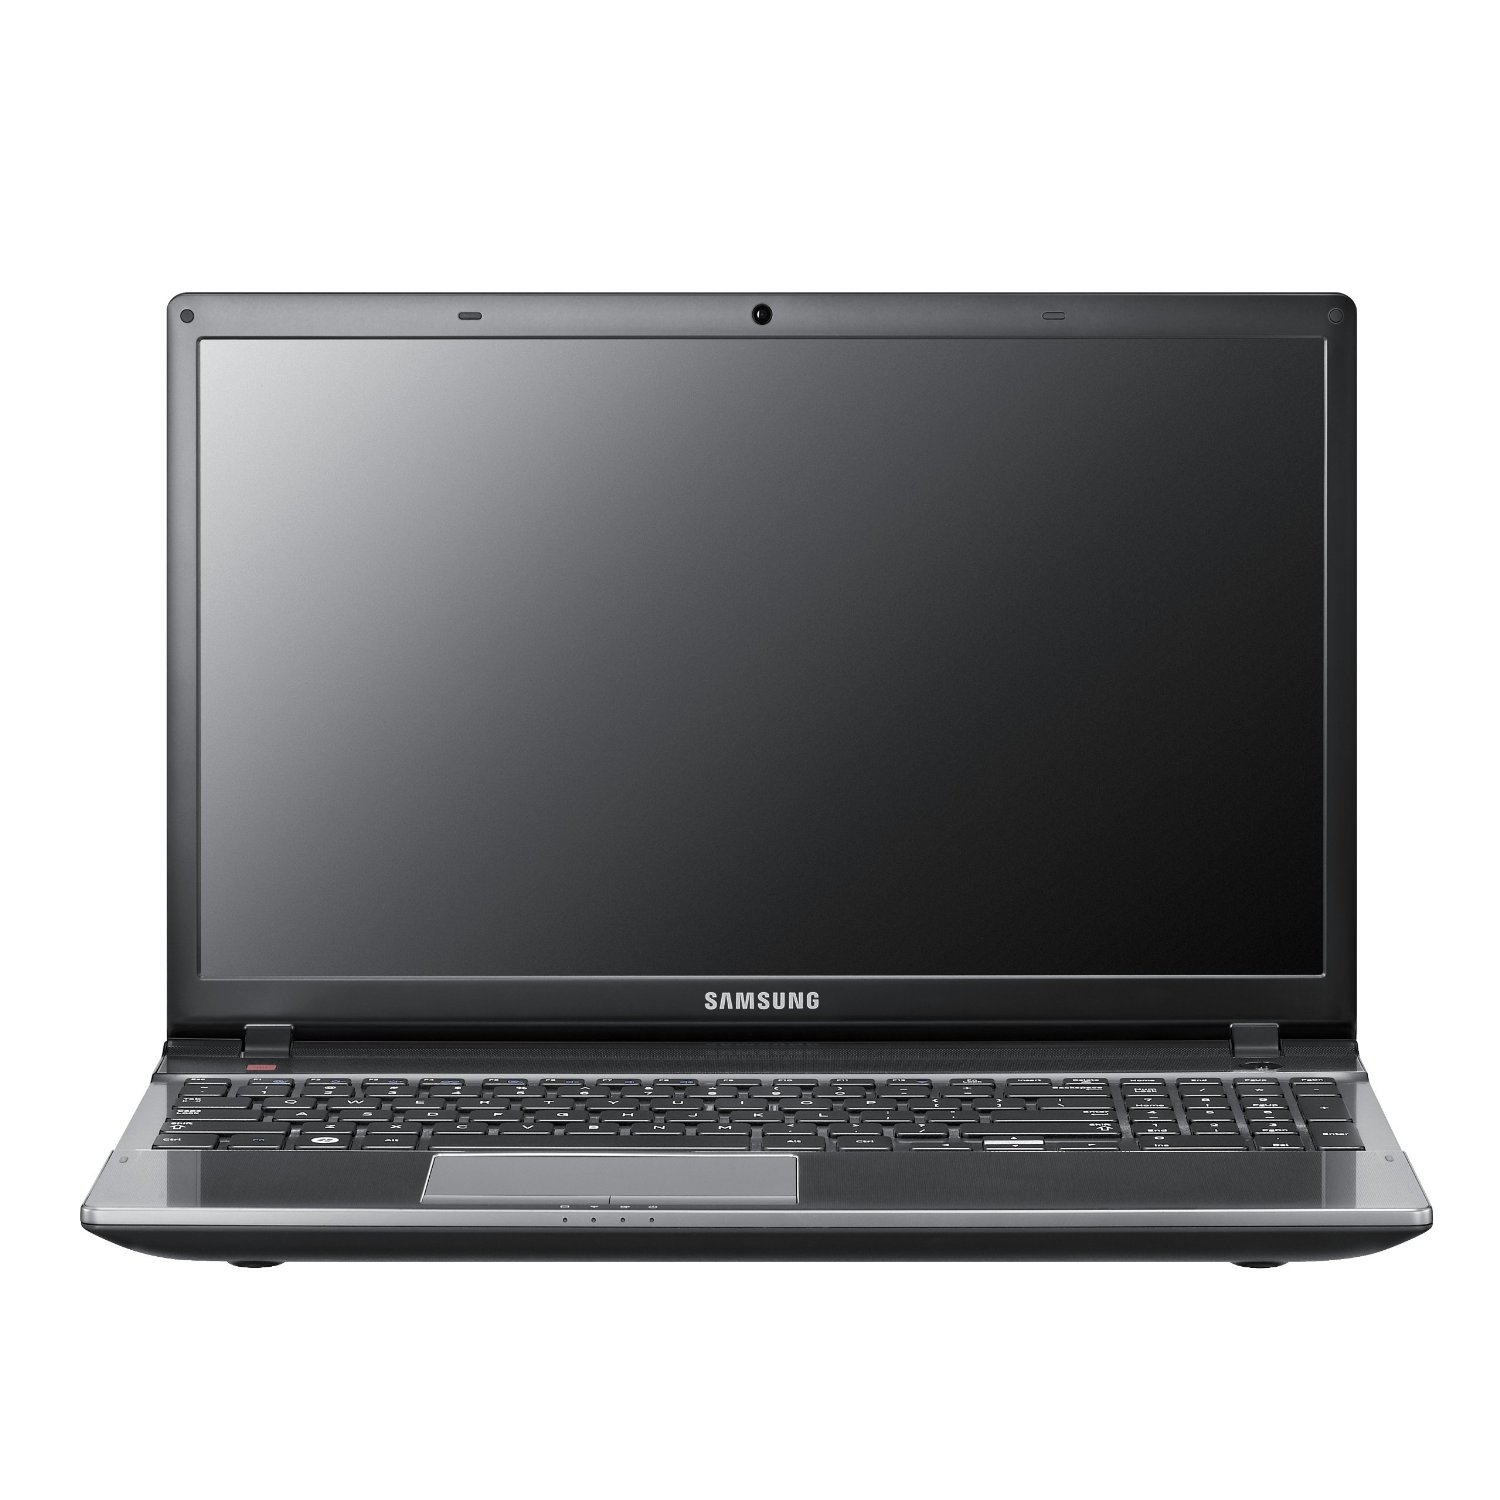 Samsung Series 5 Ultrabook NP550P5C-S05 Notebook